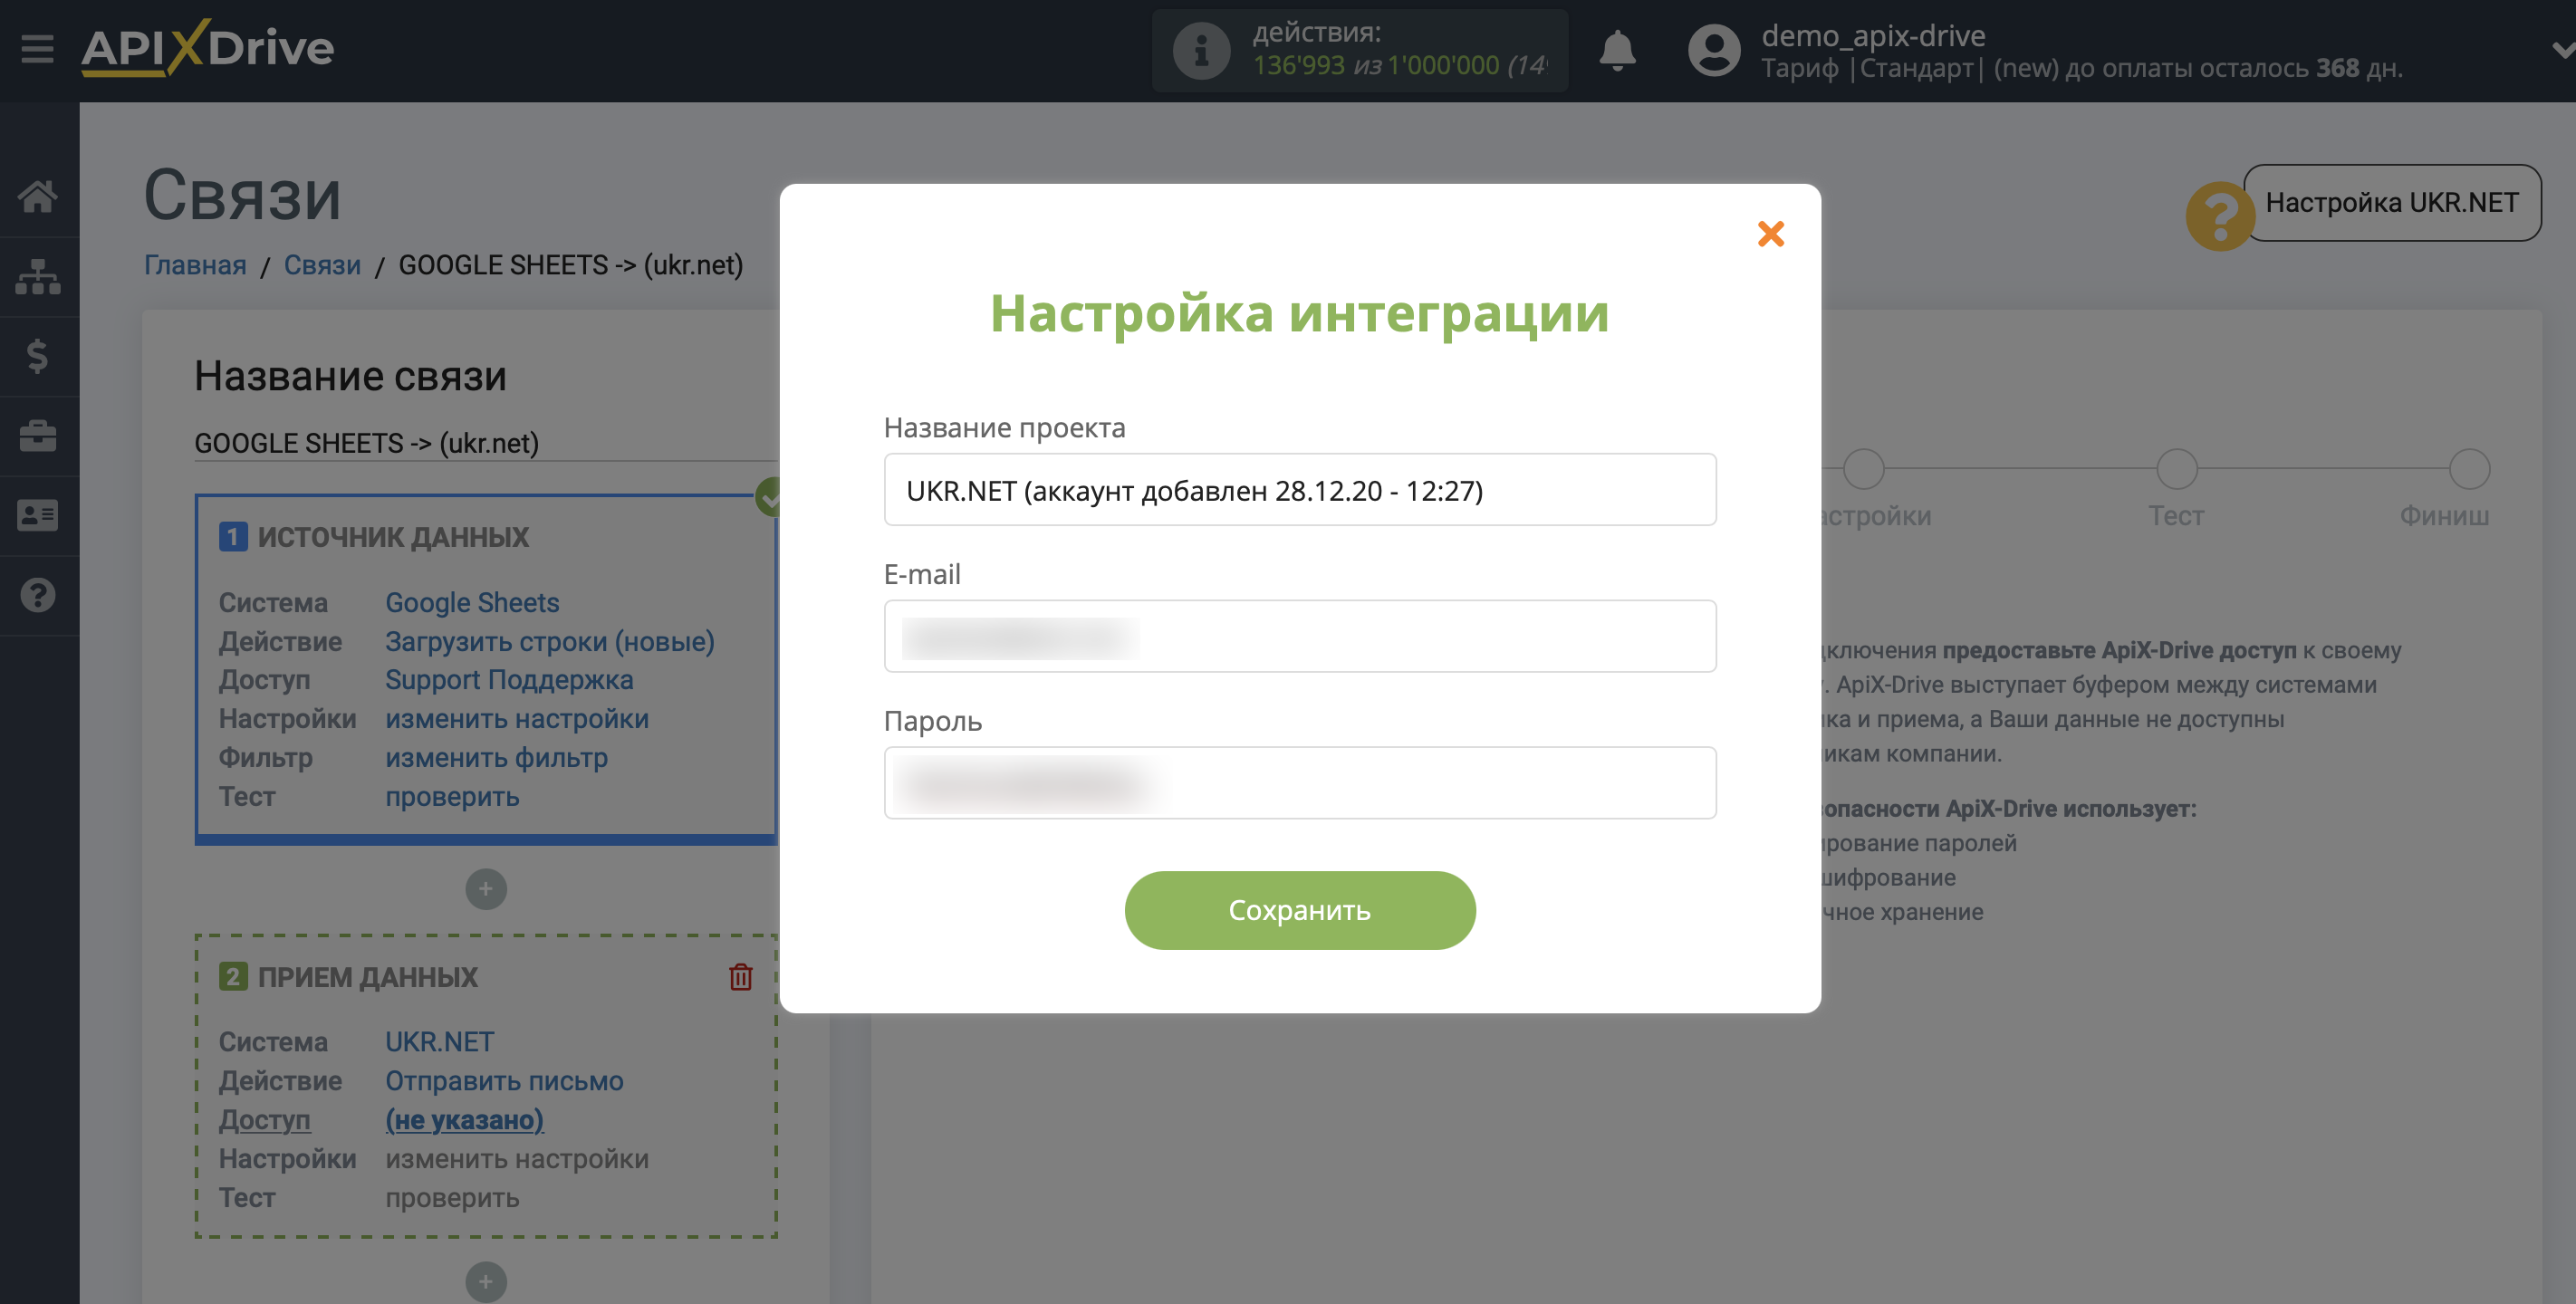 Настройка UKR.NET в качестве Приема данных | Внесение данных